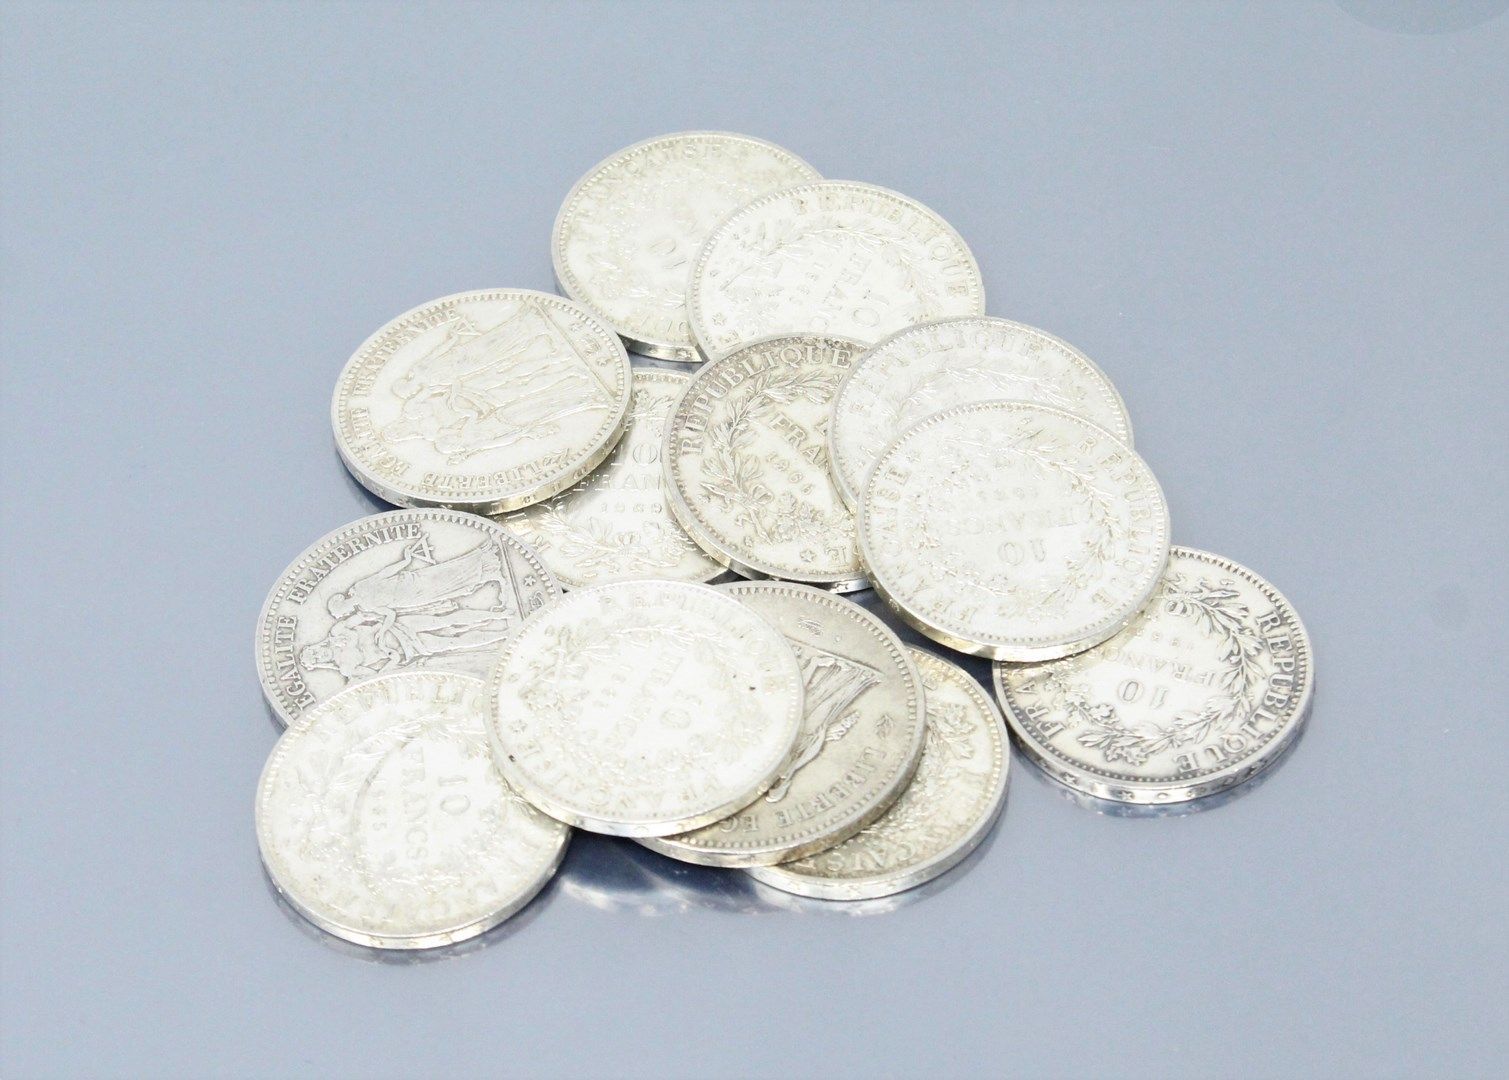 Null Silbermünzen des Typs "Herkules":

- 50 F : 1976

- 10 F : 1965 (x6) - 1966&hellip;